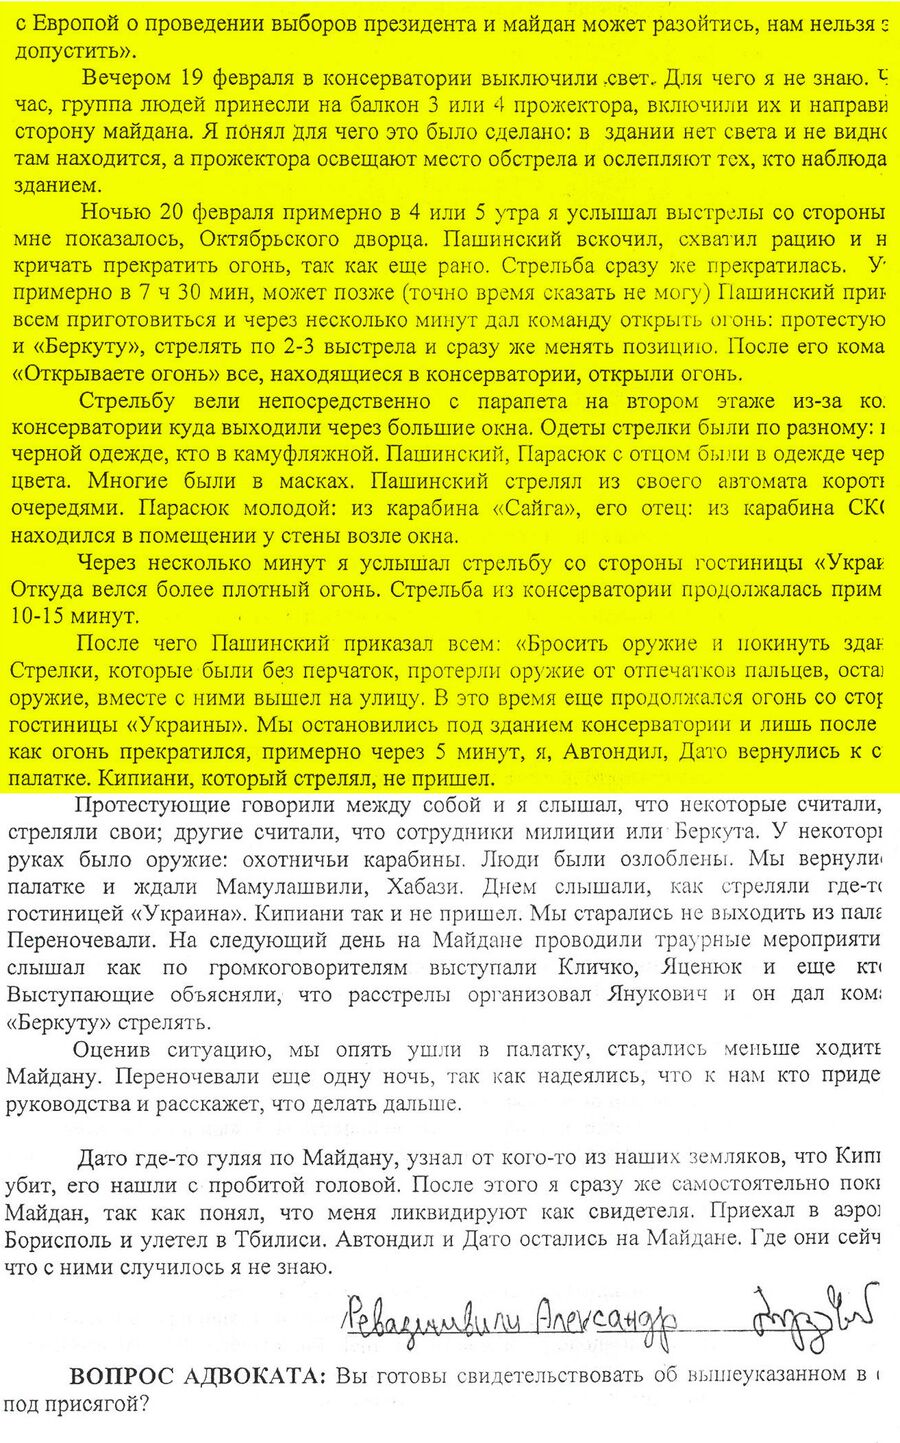 Протокол опроса Александра Ревазишвили